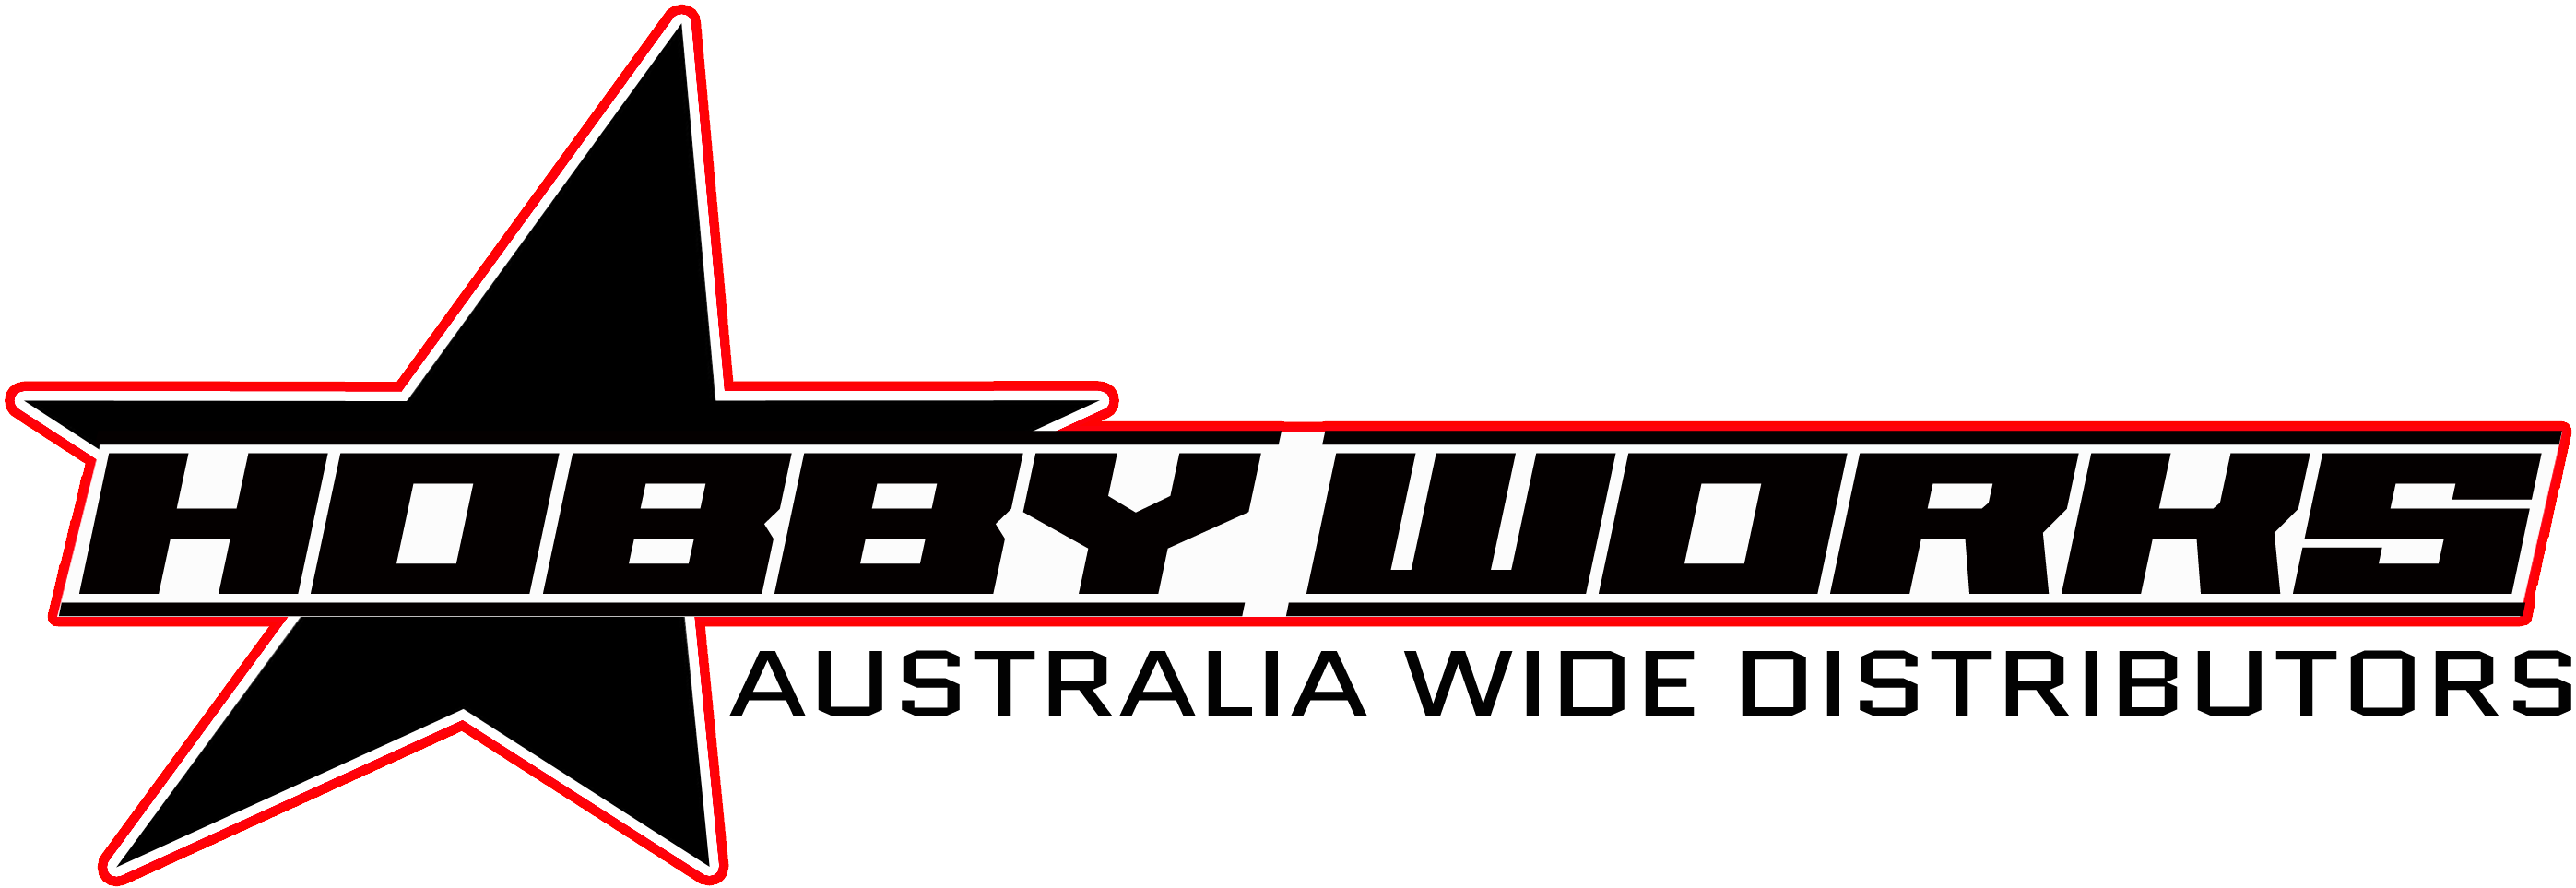 Hobby Works logo